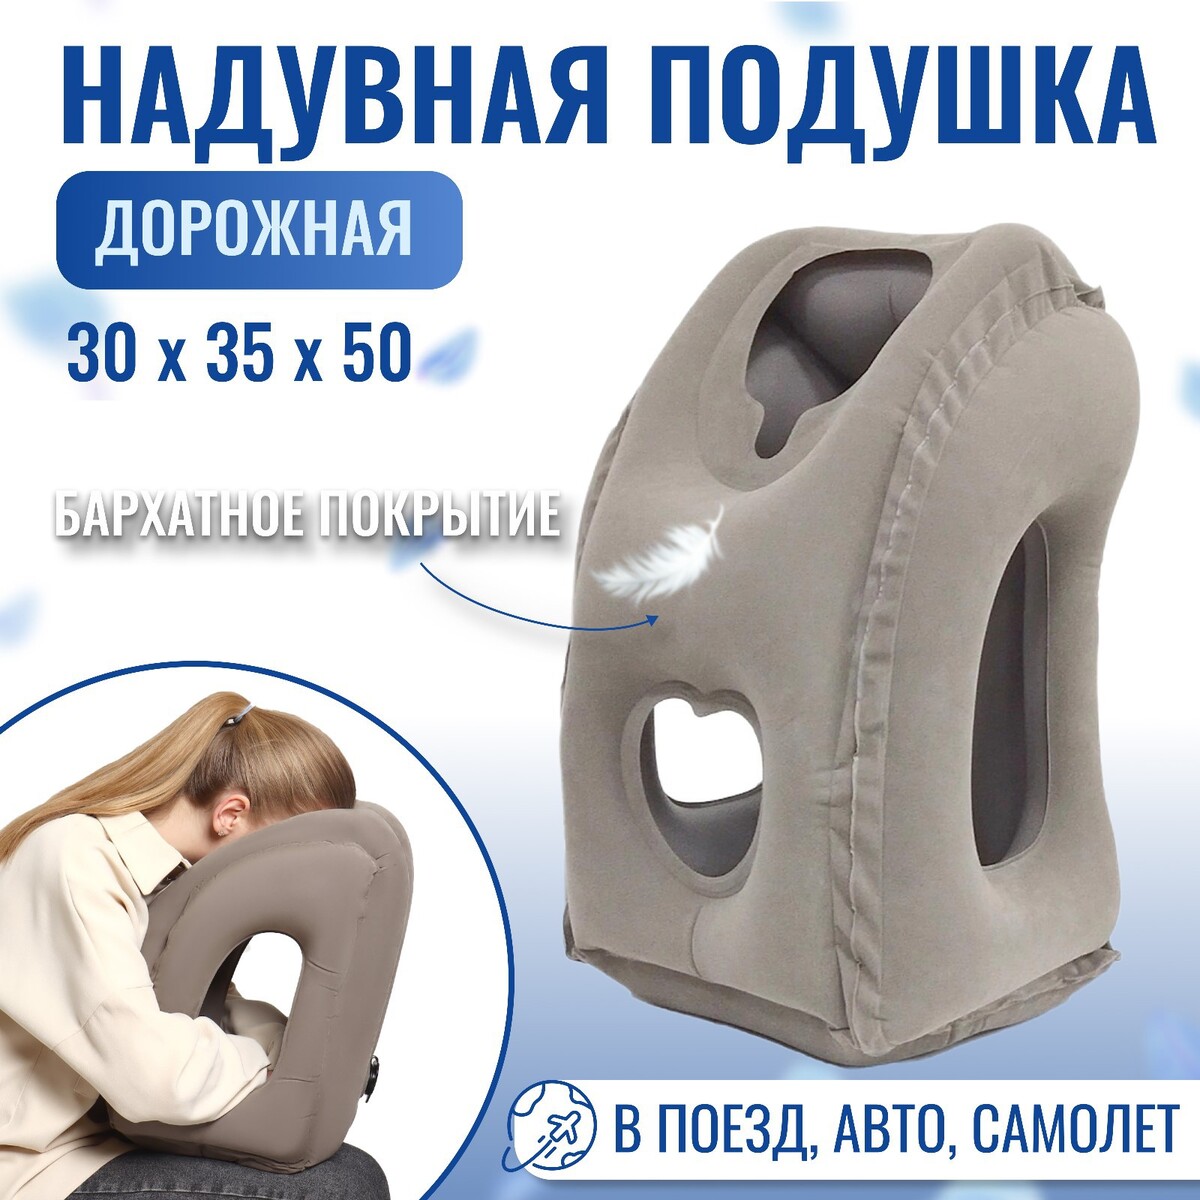 Подушка надувная, 50 × 35 × 30 см, в чехле, цвет серый подушка надувная 46 × 33 × 45 см в чехле серый